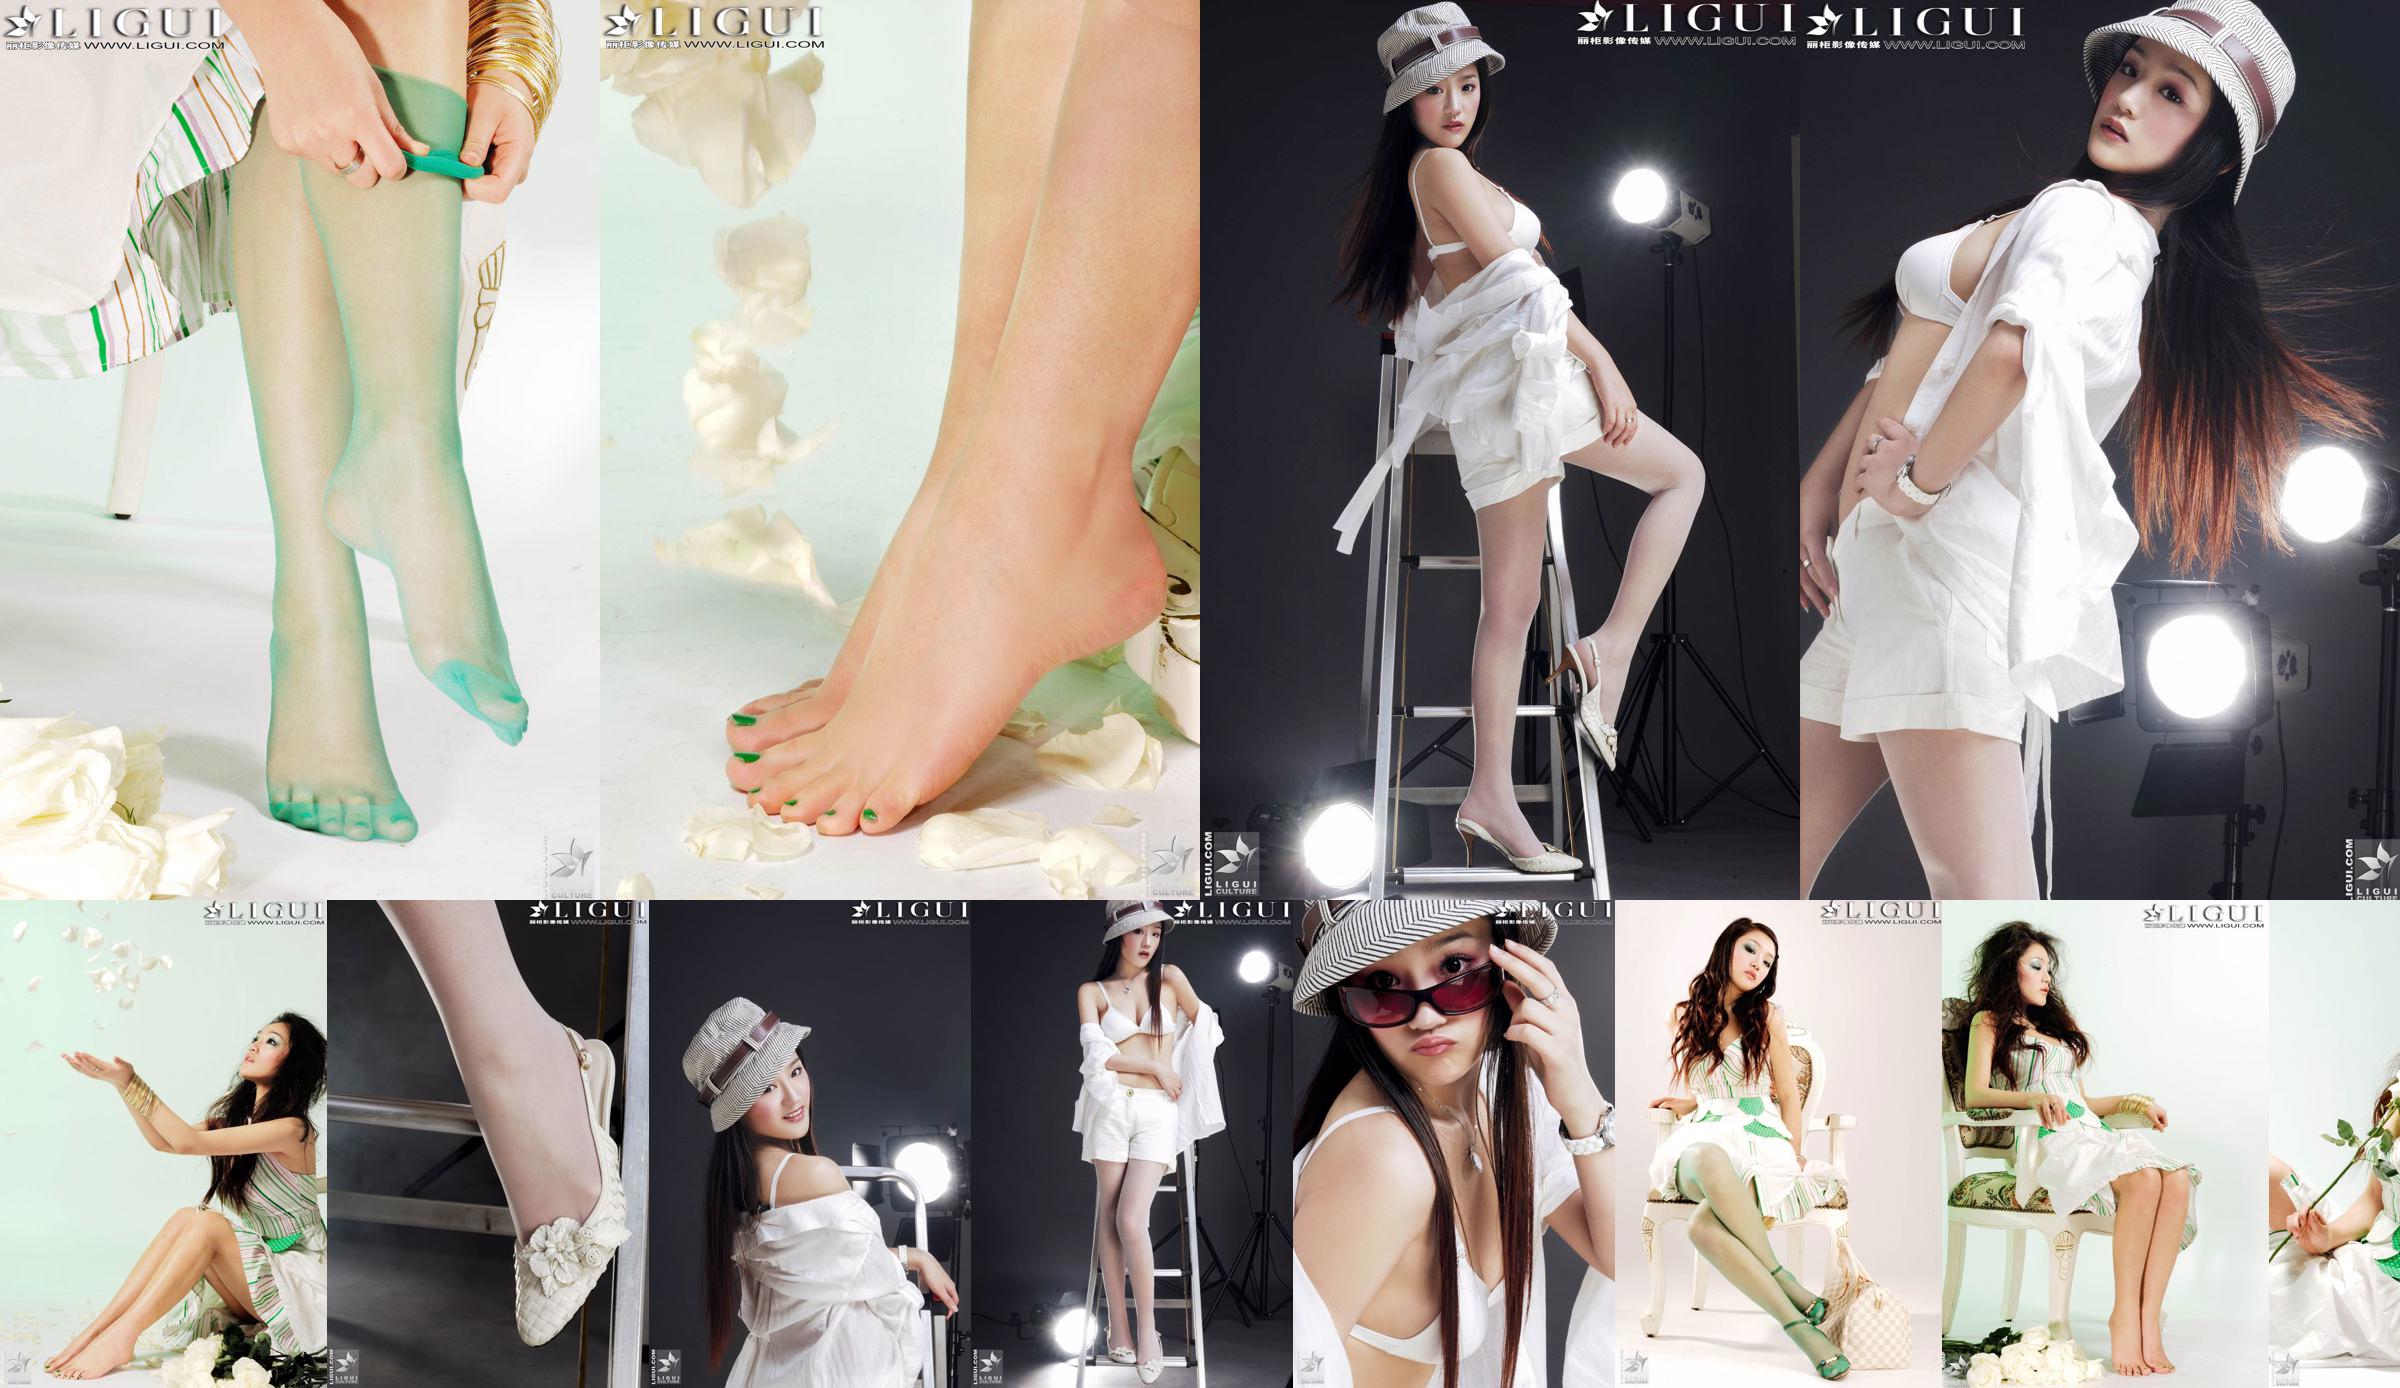 [丽柜贵足LiGui] Model Zhang Jingyan's "Fashionable Foot" photo of beautiful legs and silk feet No.1a3670 Page 4